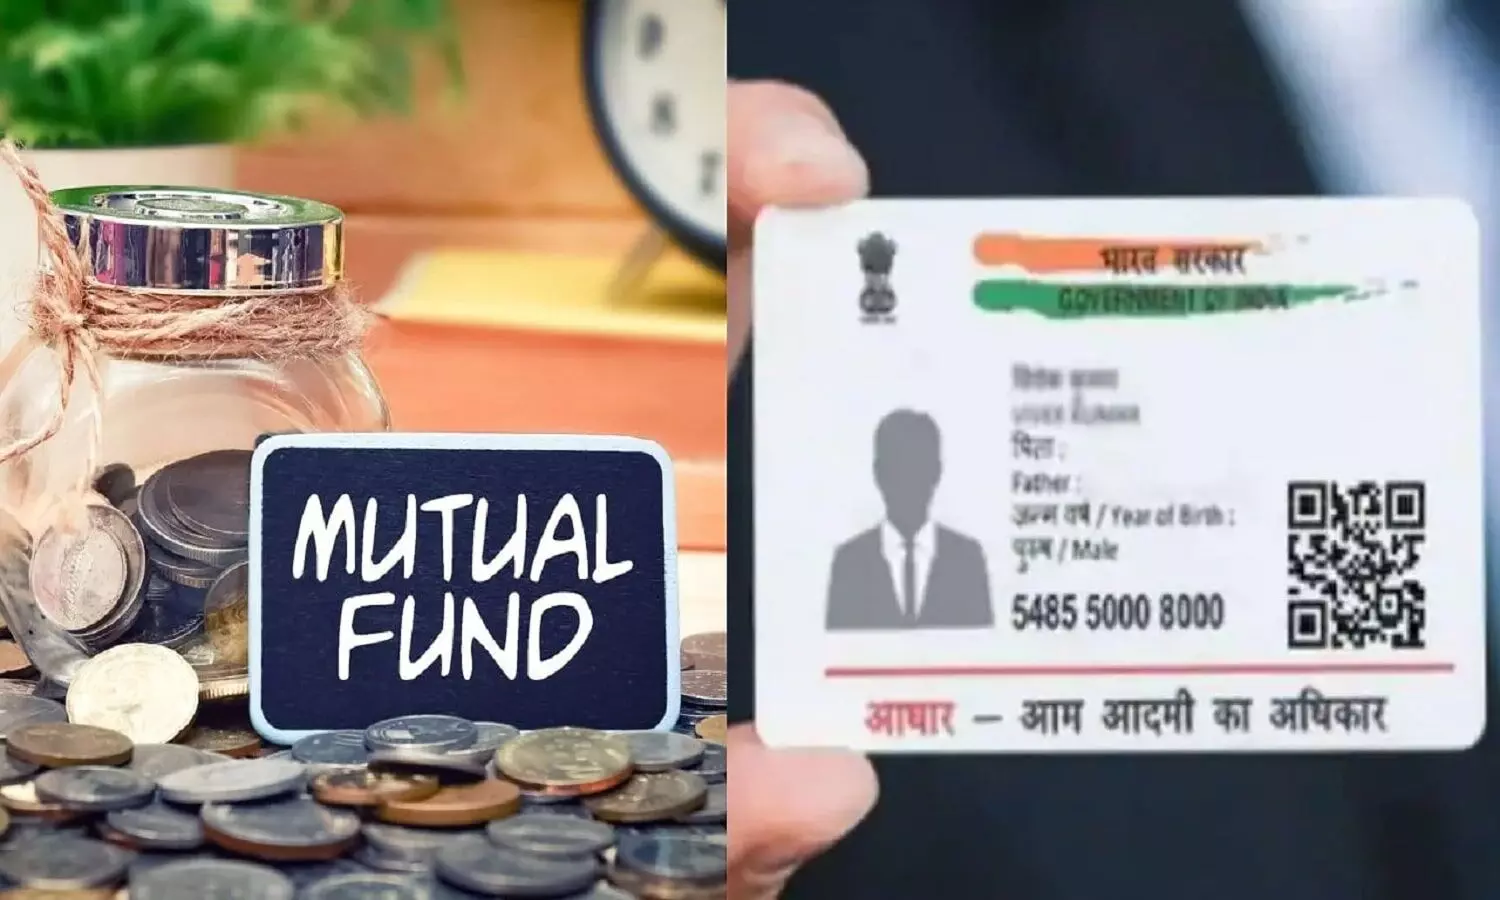 Aadhaar Card Link: जानिए Mutual Fund को आधार कार्ड से लिंक कराने का पूरा प्रोसीजर, क्यों हैं बेहद जरुरी? जानें